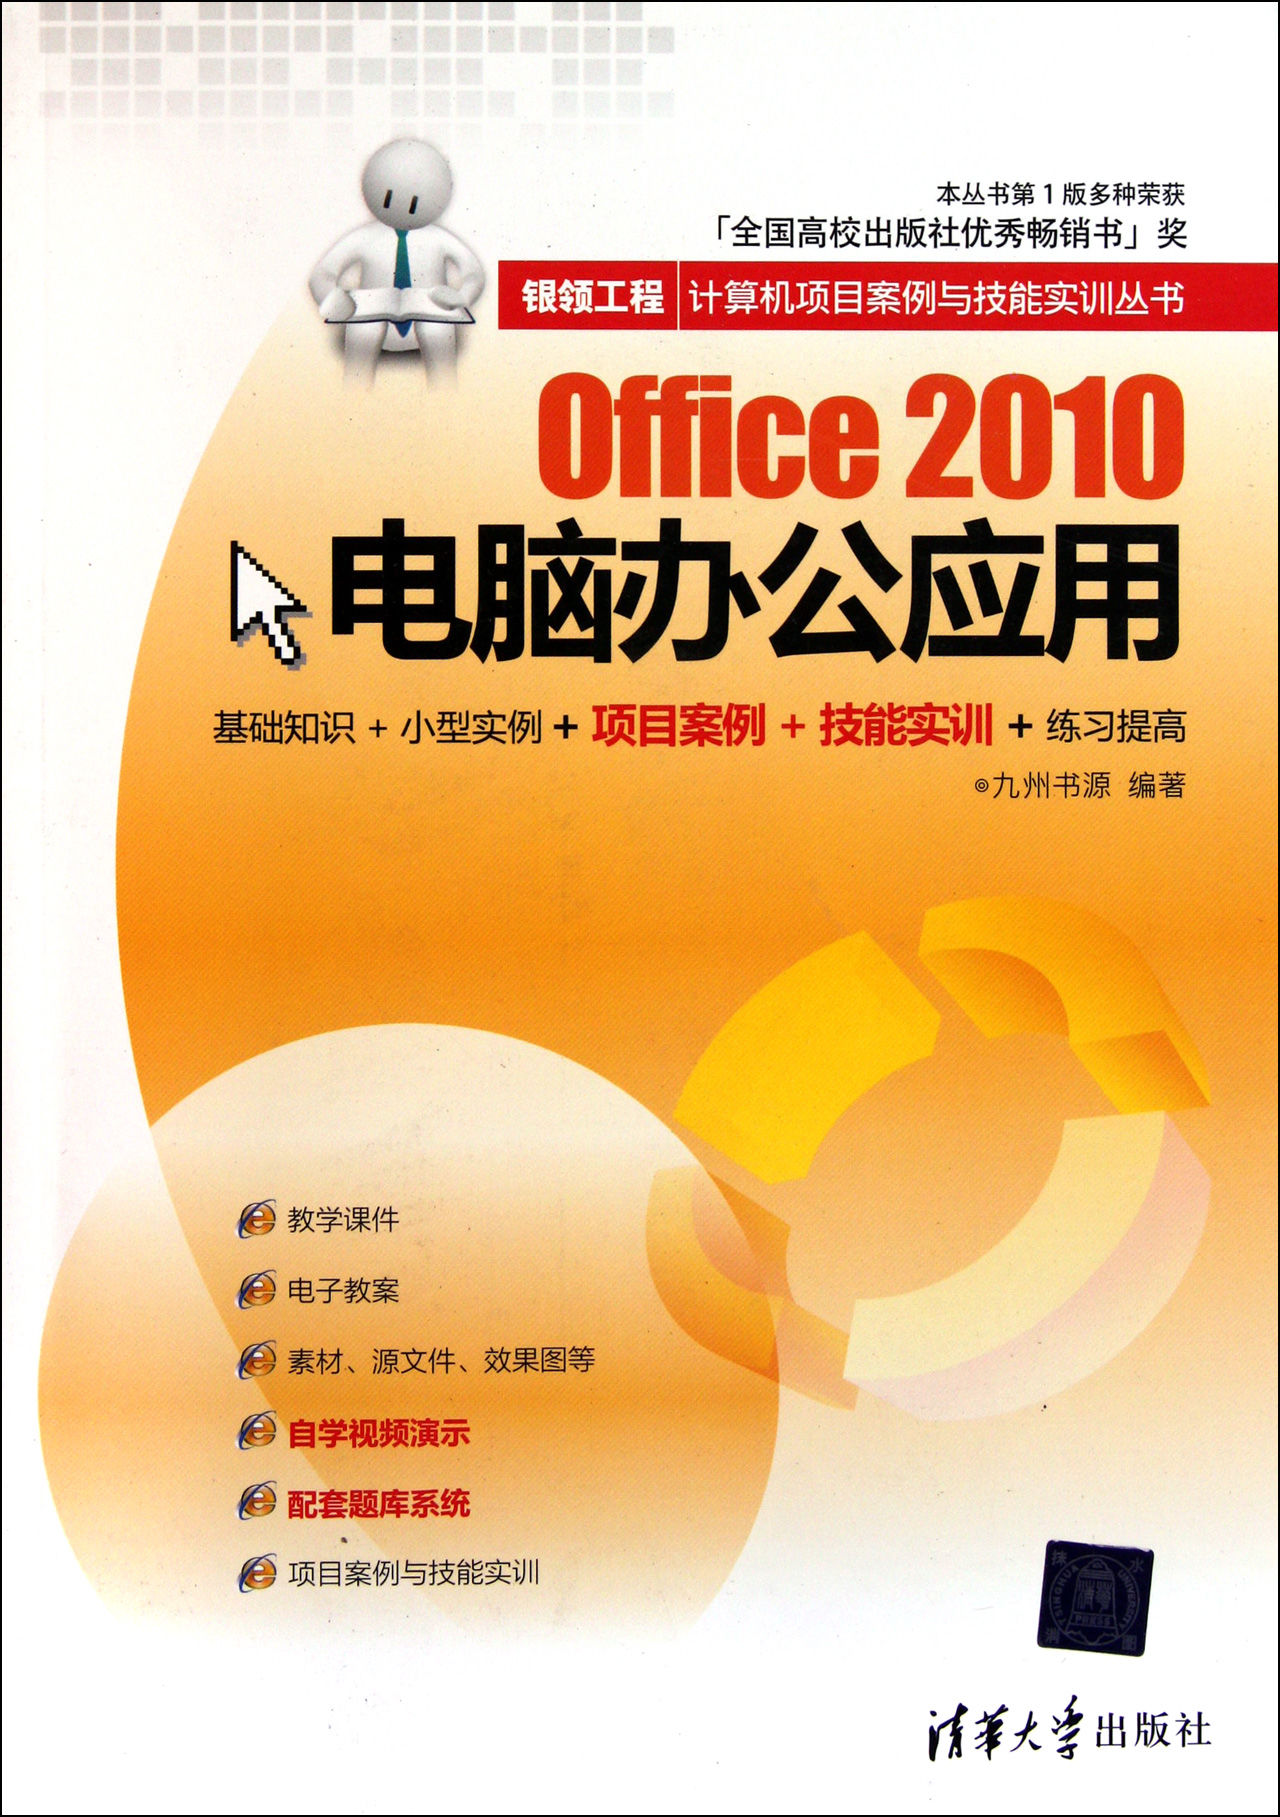 Office 2010電腦辦公套用